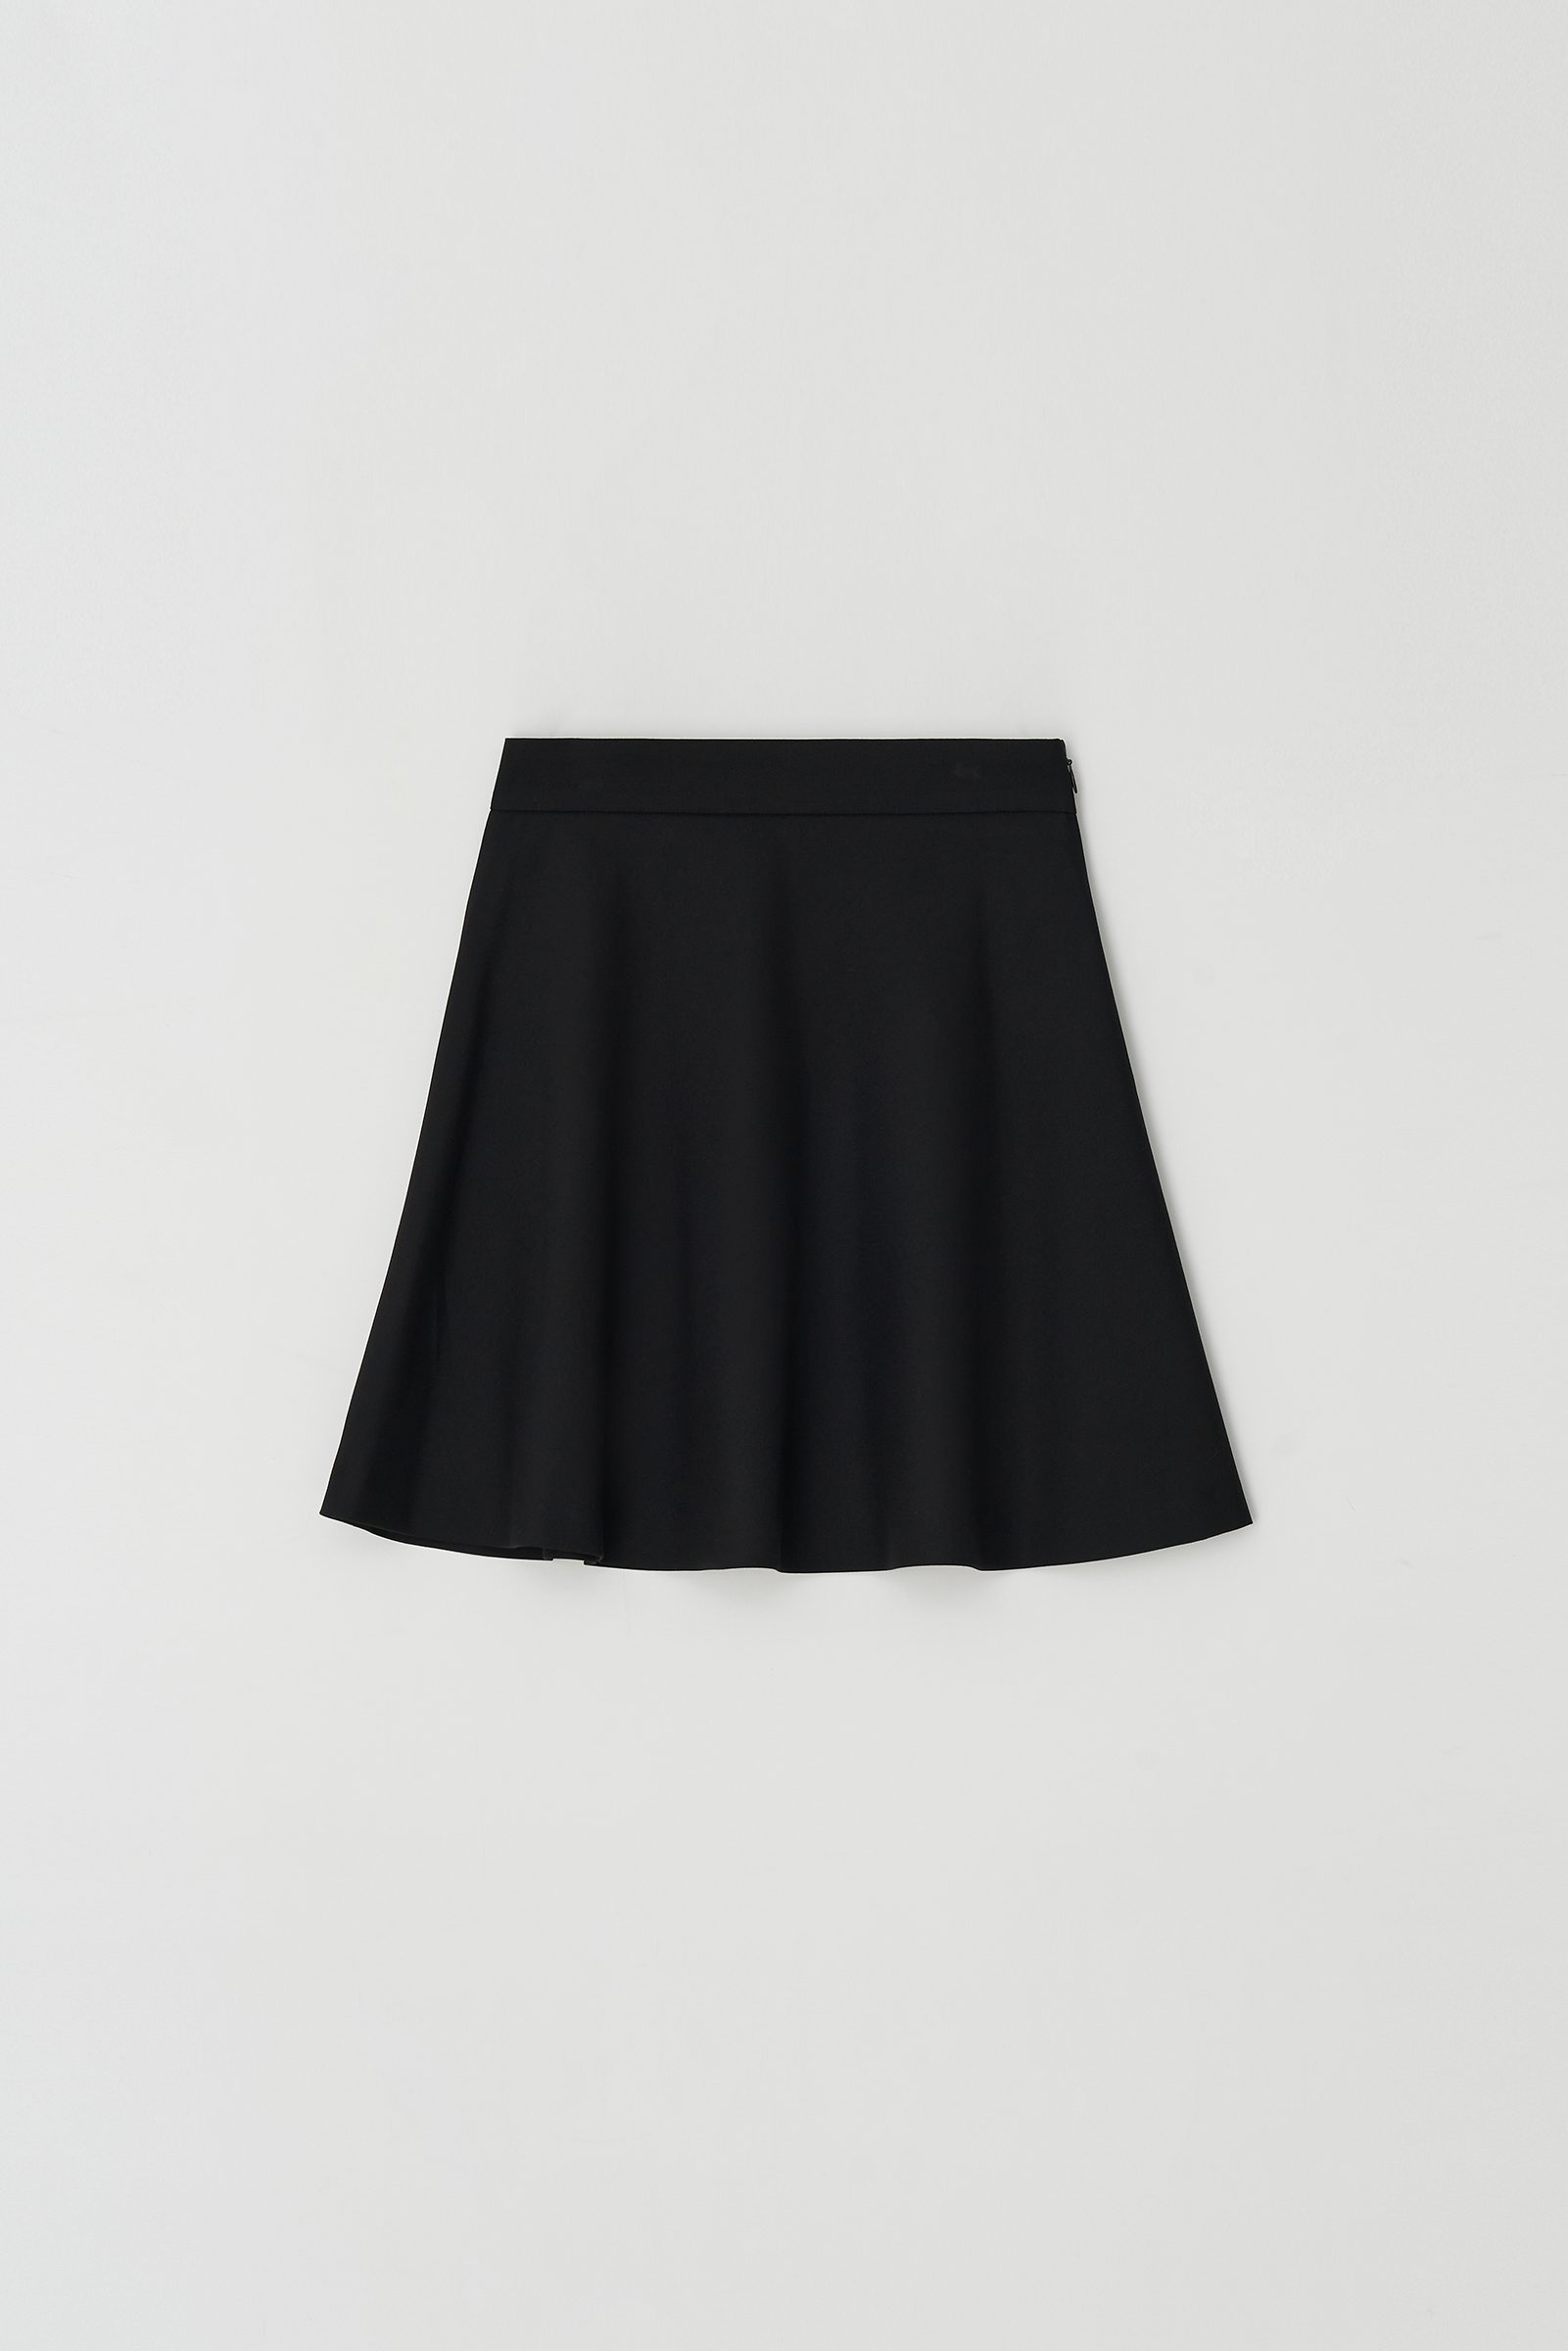 Mini Flare Skirt